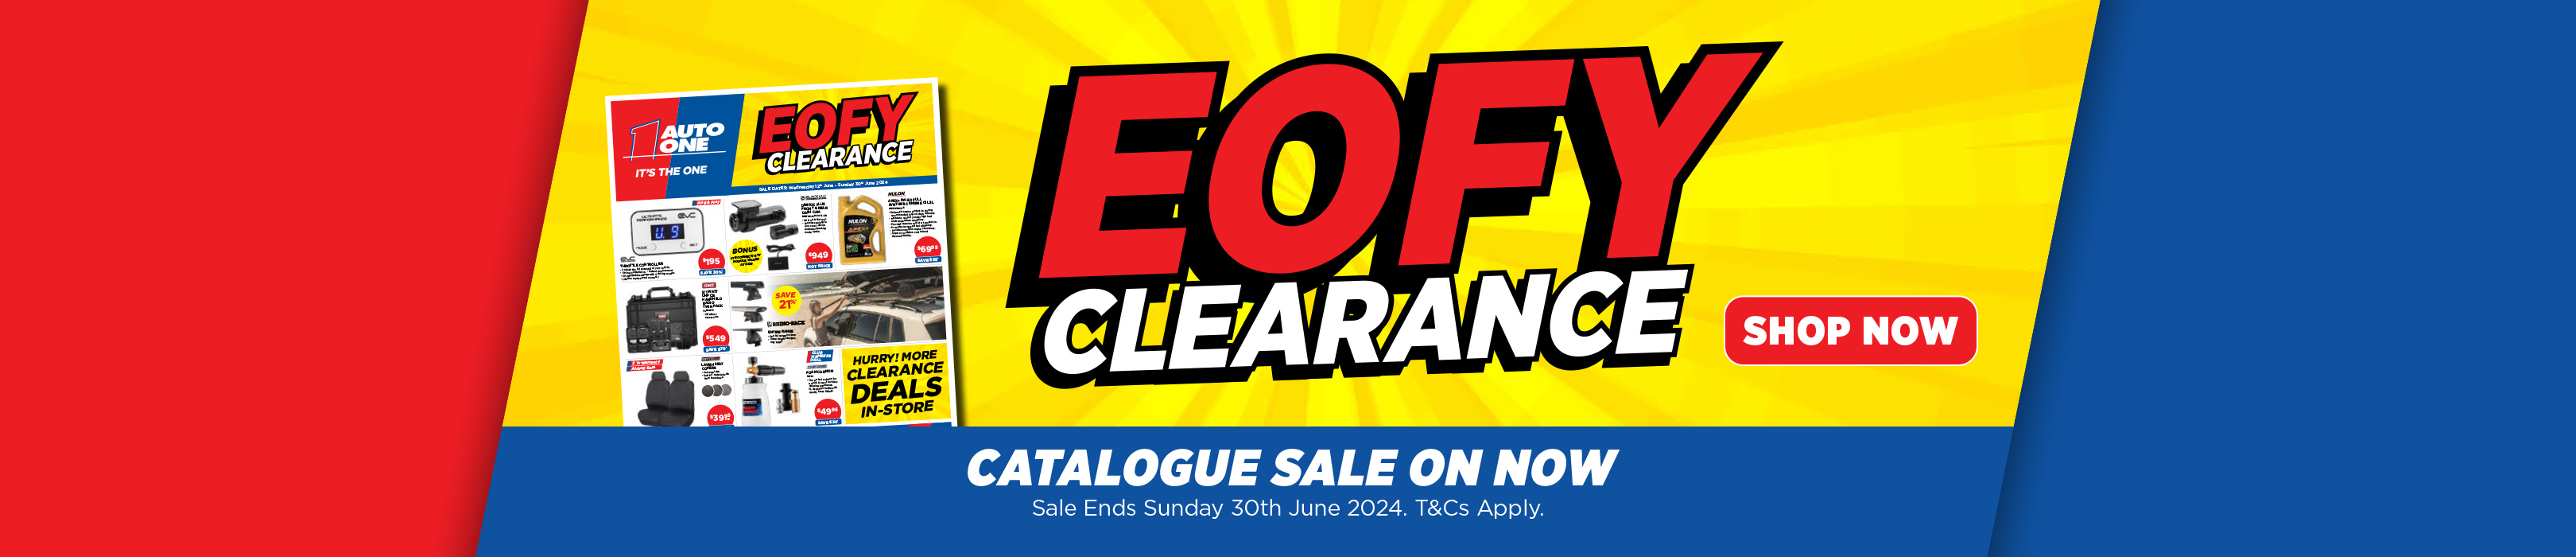 EOFY Clearance Sale